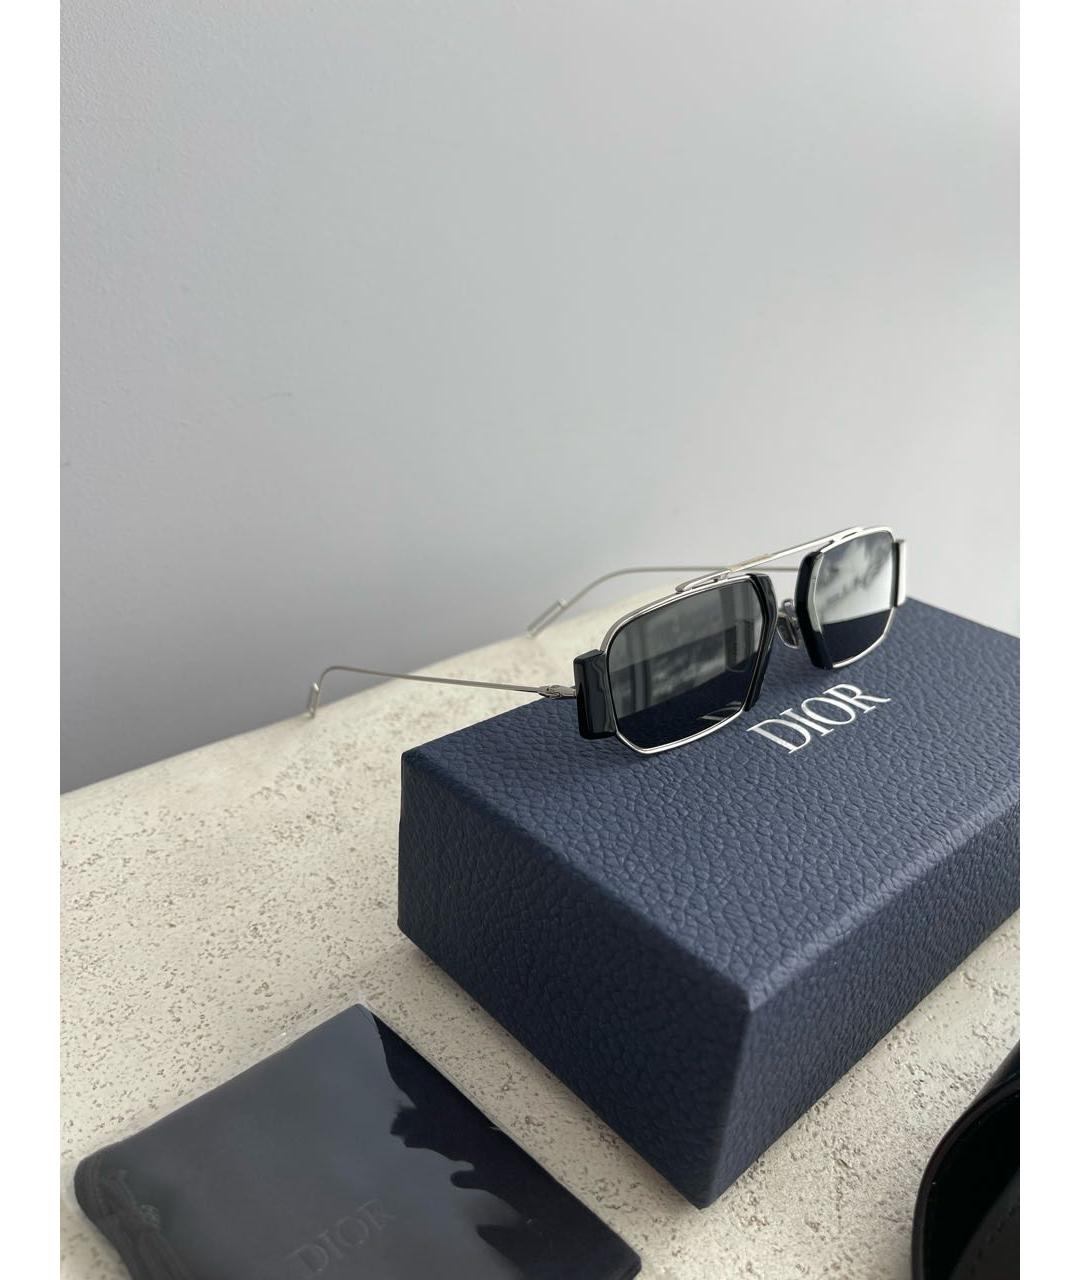 CHRISTIAN DIOR PRE-OWNED Черные металлические солнцезащитные очки, фото 4